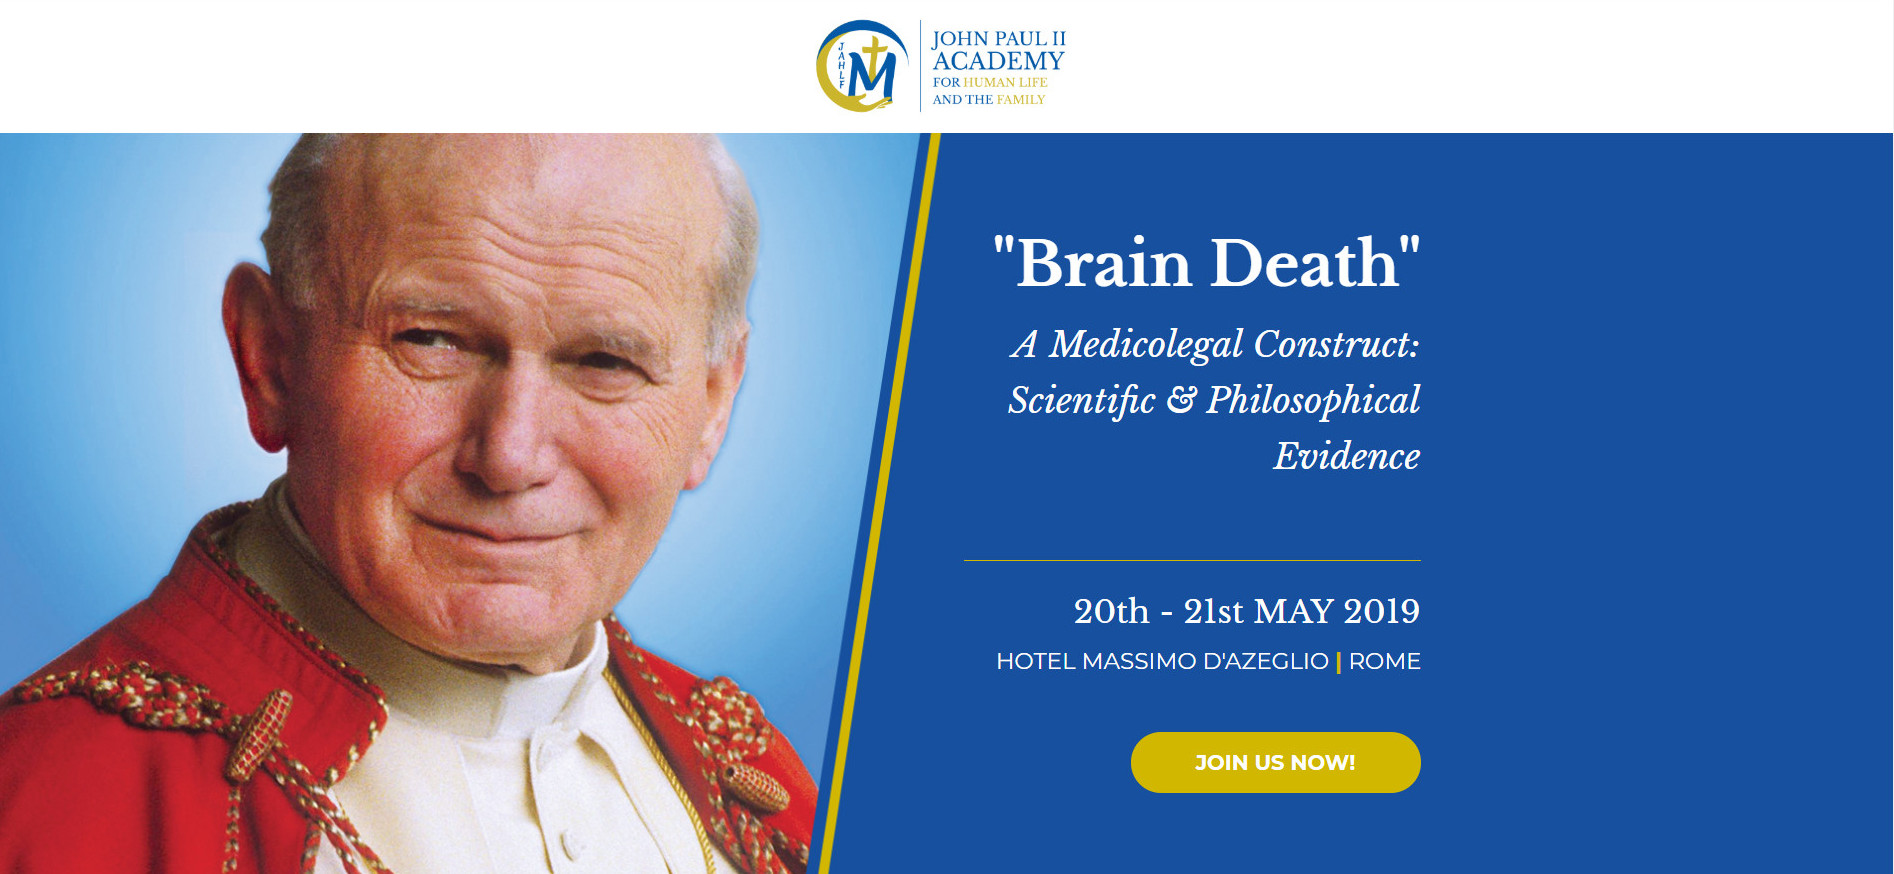 La Academia Juan Pablo II para la Vida Humana y la Familia celebrará en Roma un Congreso sobre «Muerte cerebral»